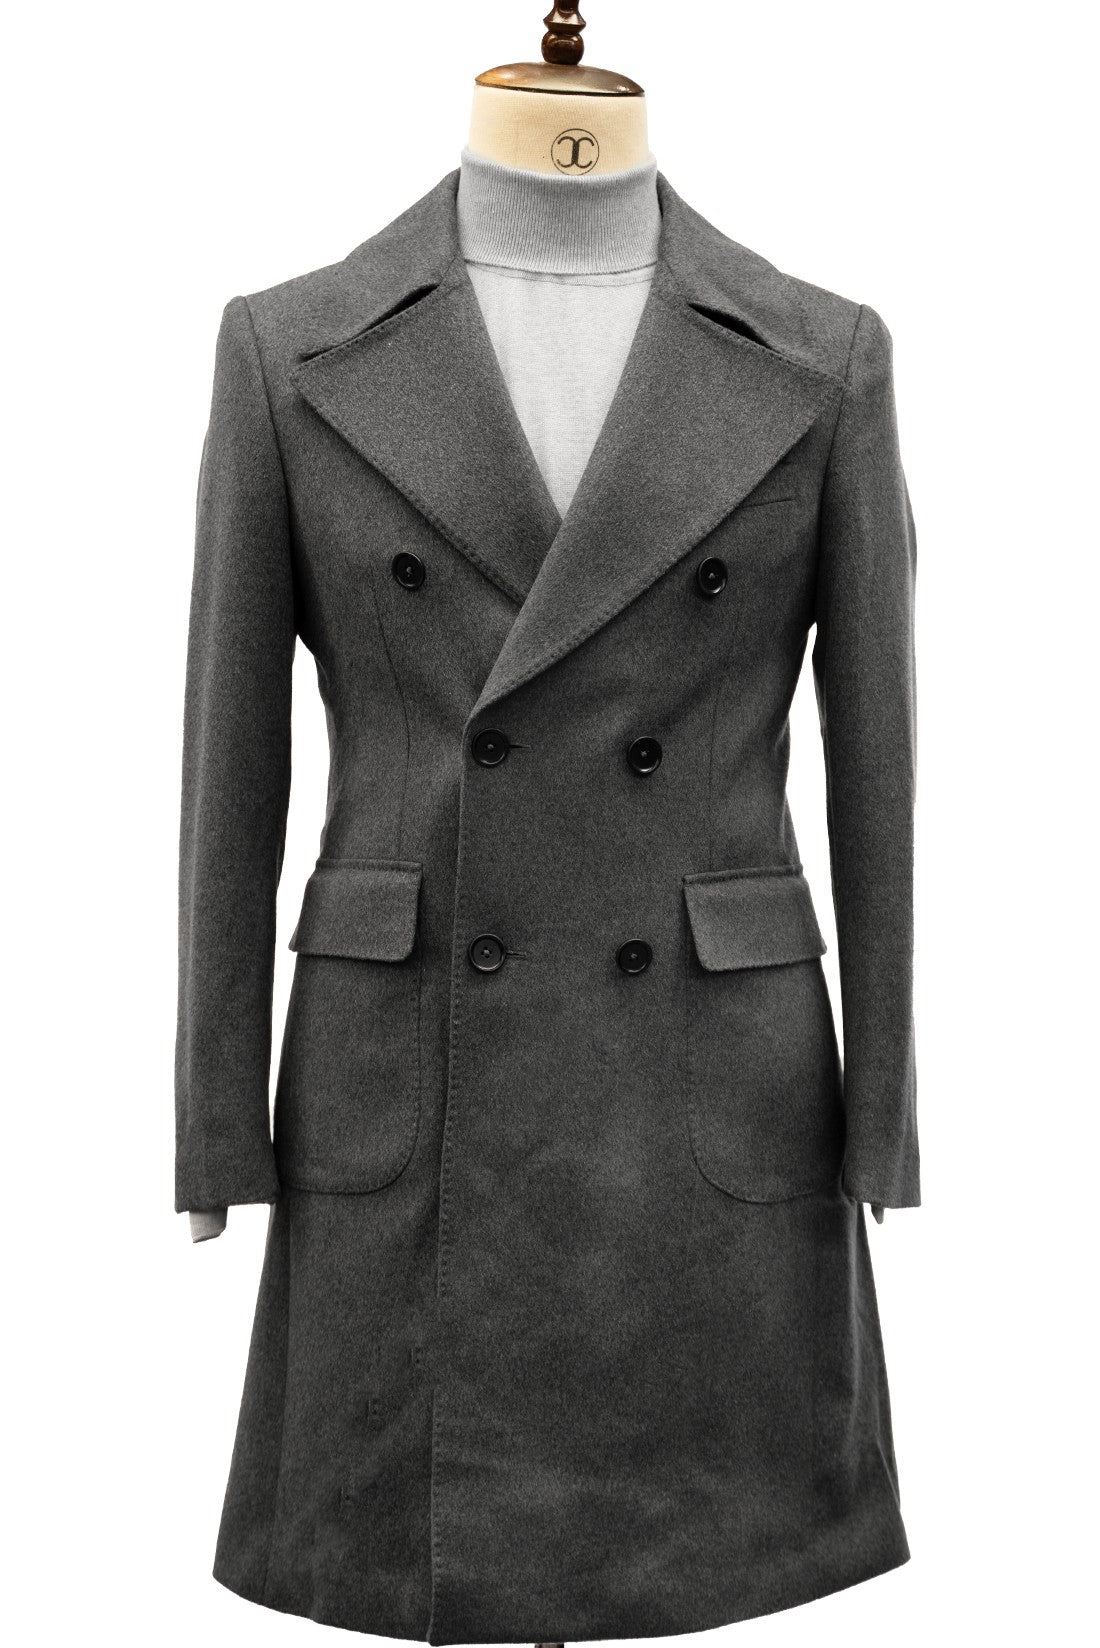 CONNAISSEUR PARIS - Elegant Ash Cashmere Wool Slim Fit Overcoat